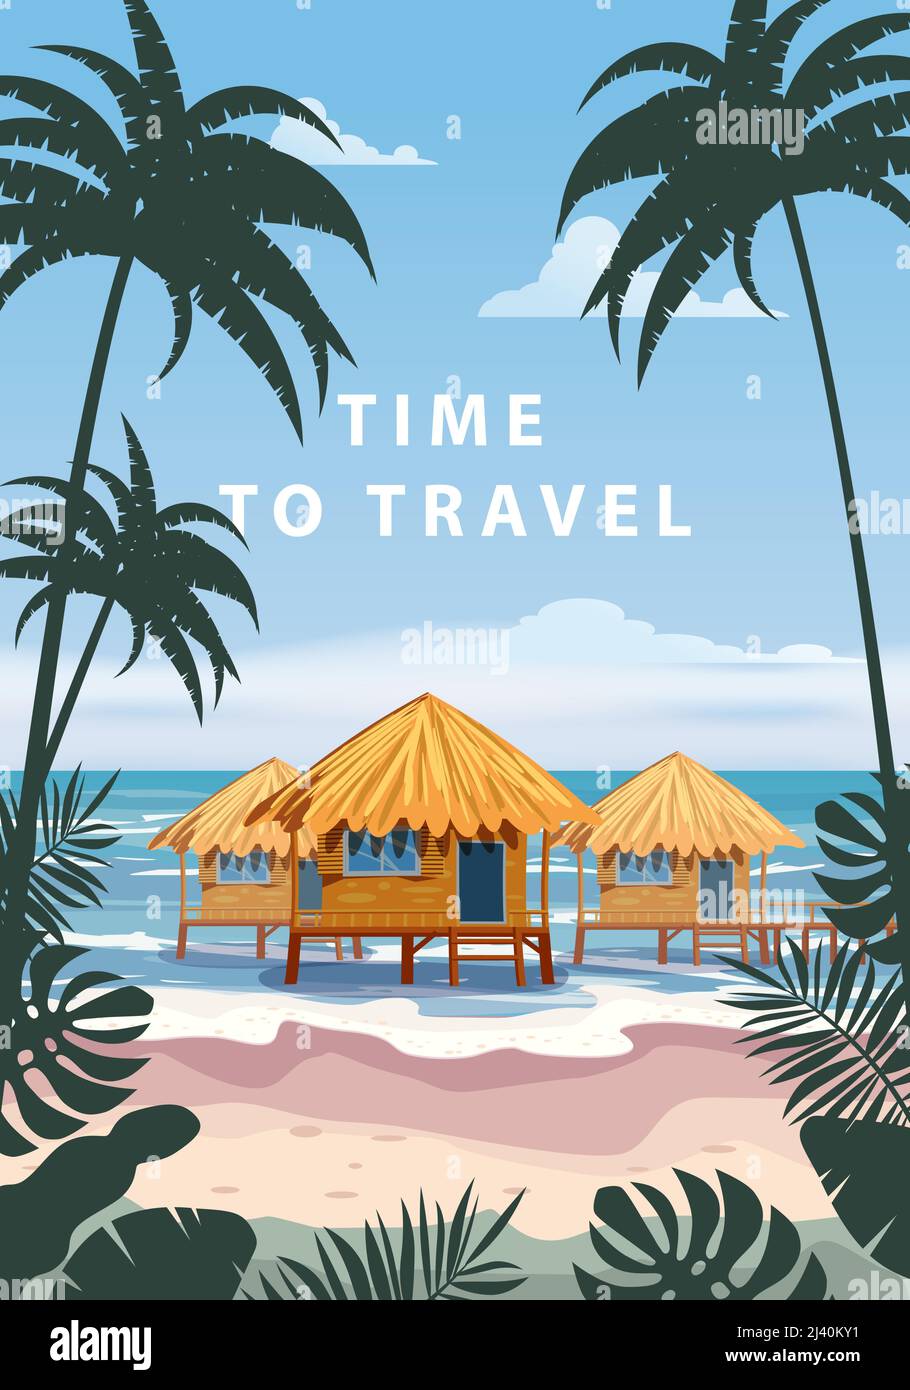 È il momento di viaggiare. Poster resort tropicale vintage. Spiaggia costa capanne tradizionali, palme, oceano. Vettore di illustrazione stile retrò Illustrazione Vettoriale